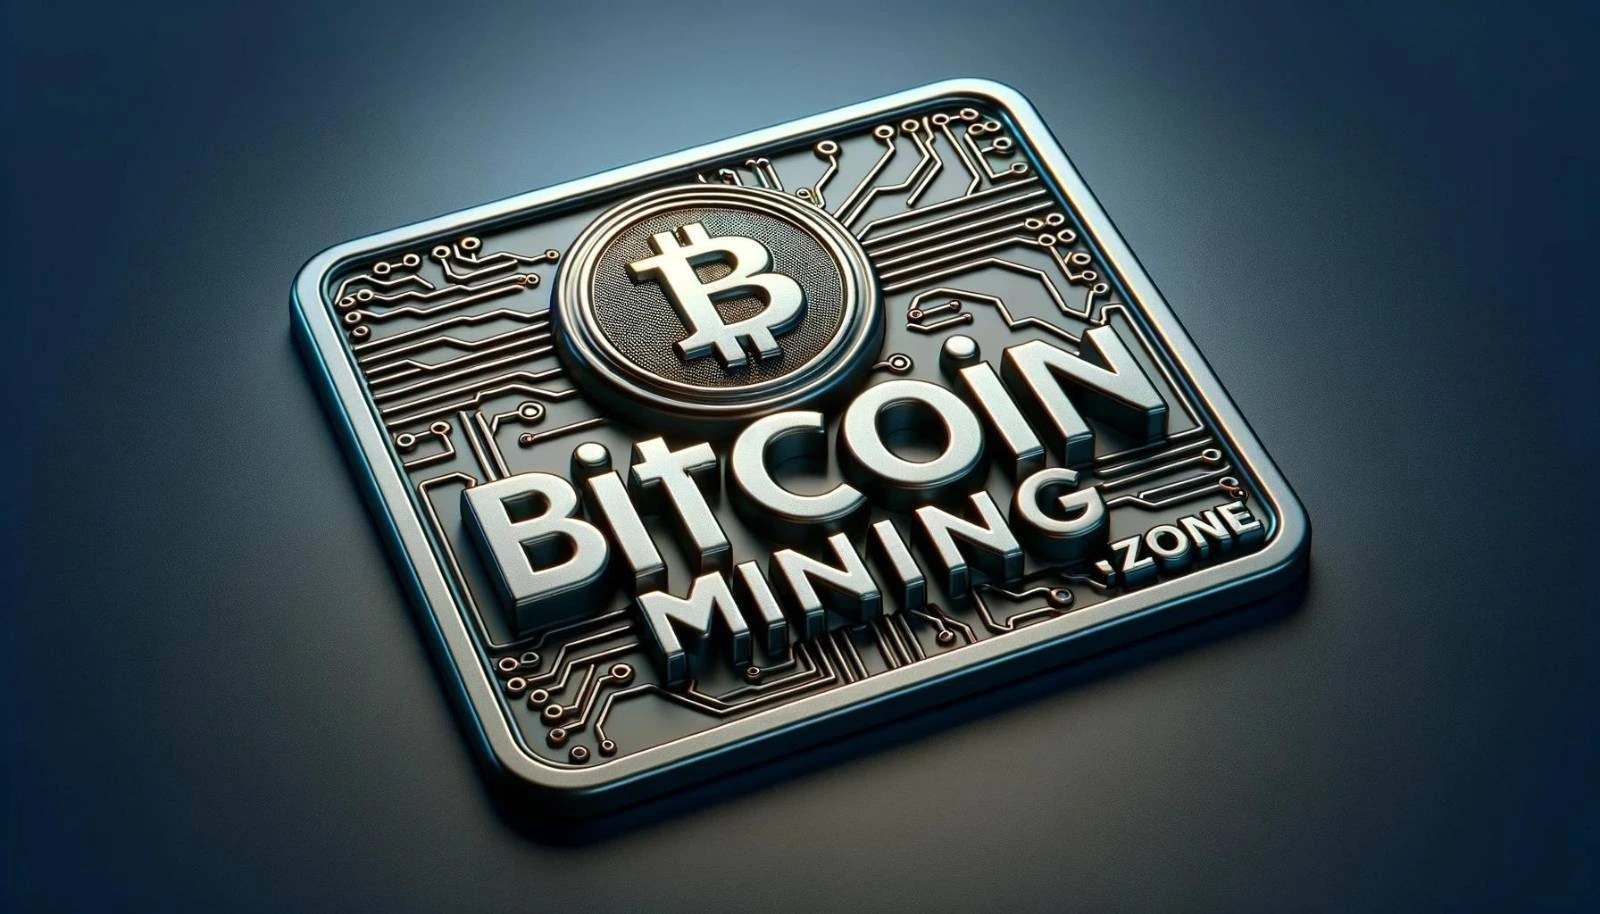 Bitcoin Mining Zone 